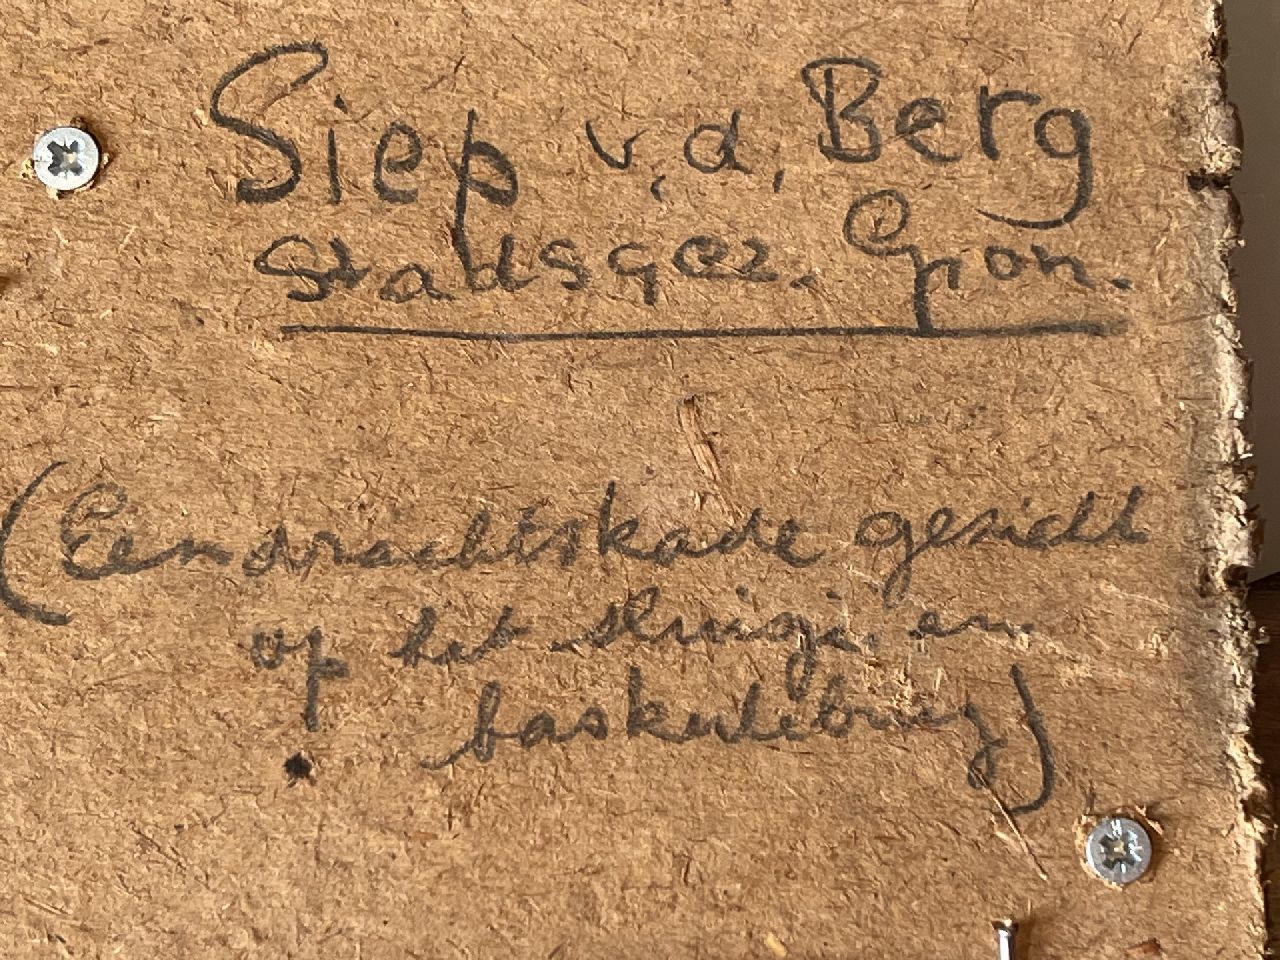 Siep van den Berg Signaturen Die Eendrachtskade und die Klappbrücke, Groningen